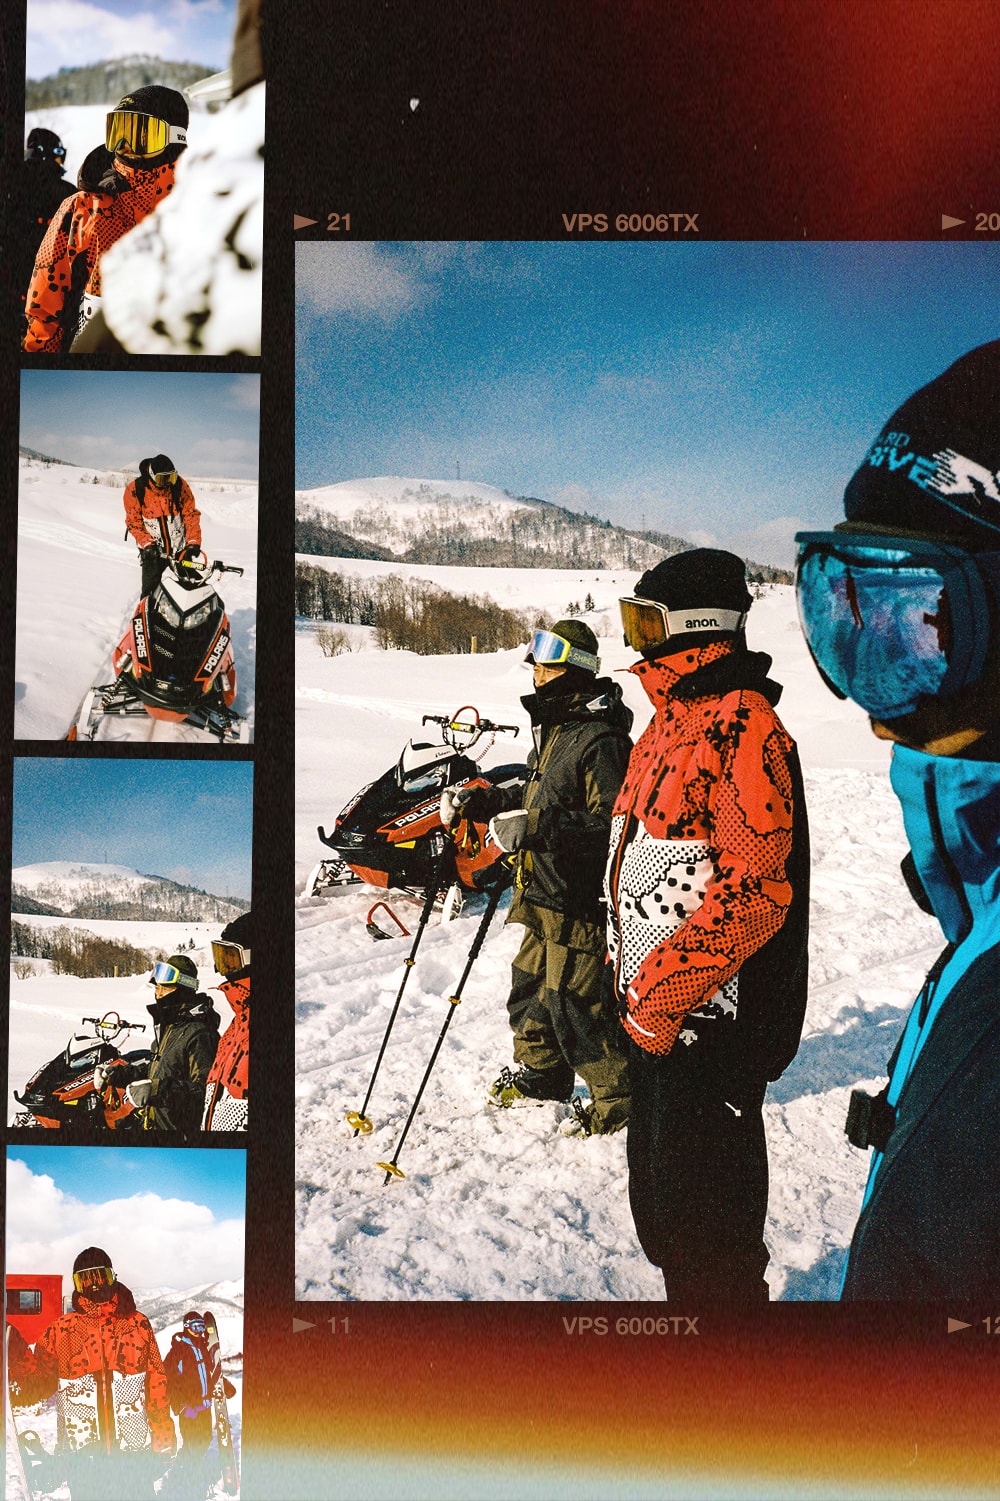 「梦回 1992」，仓石一树如何重绎奥运滑雪服的复古未来风格？